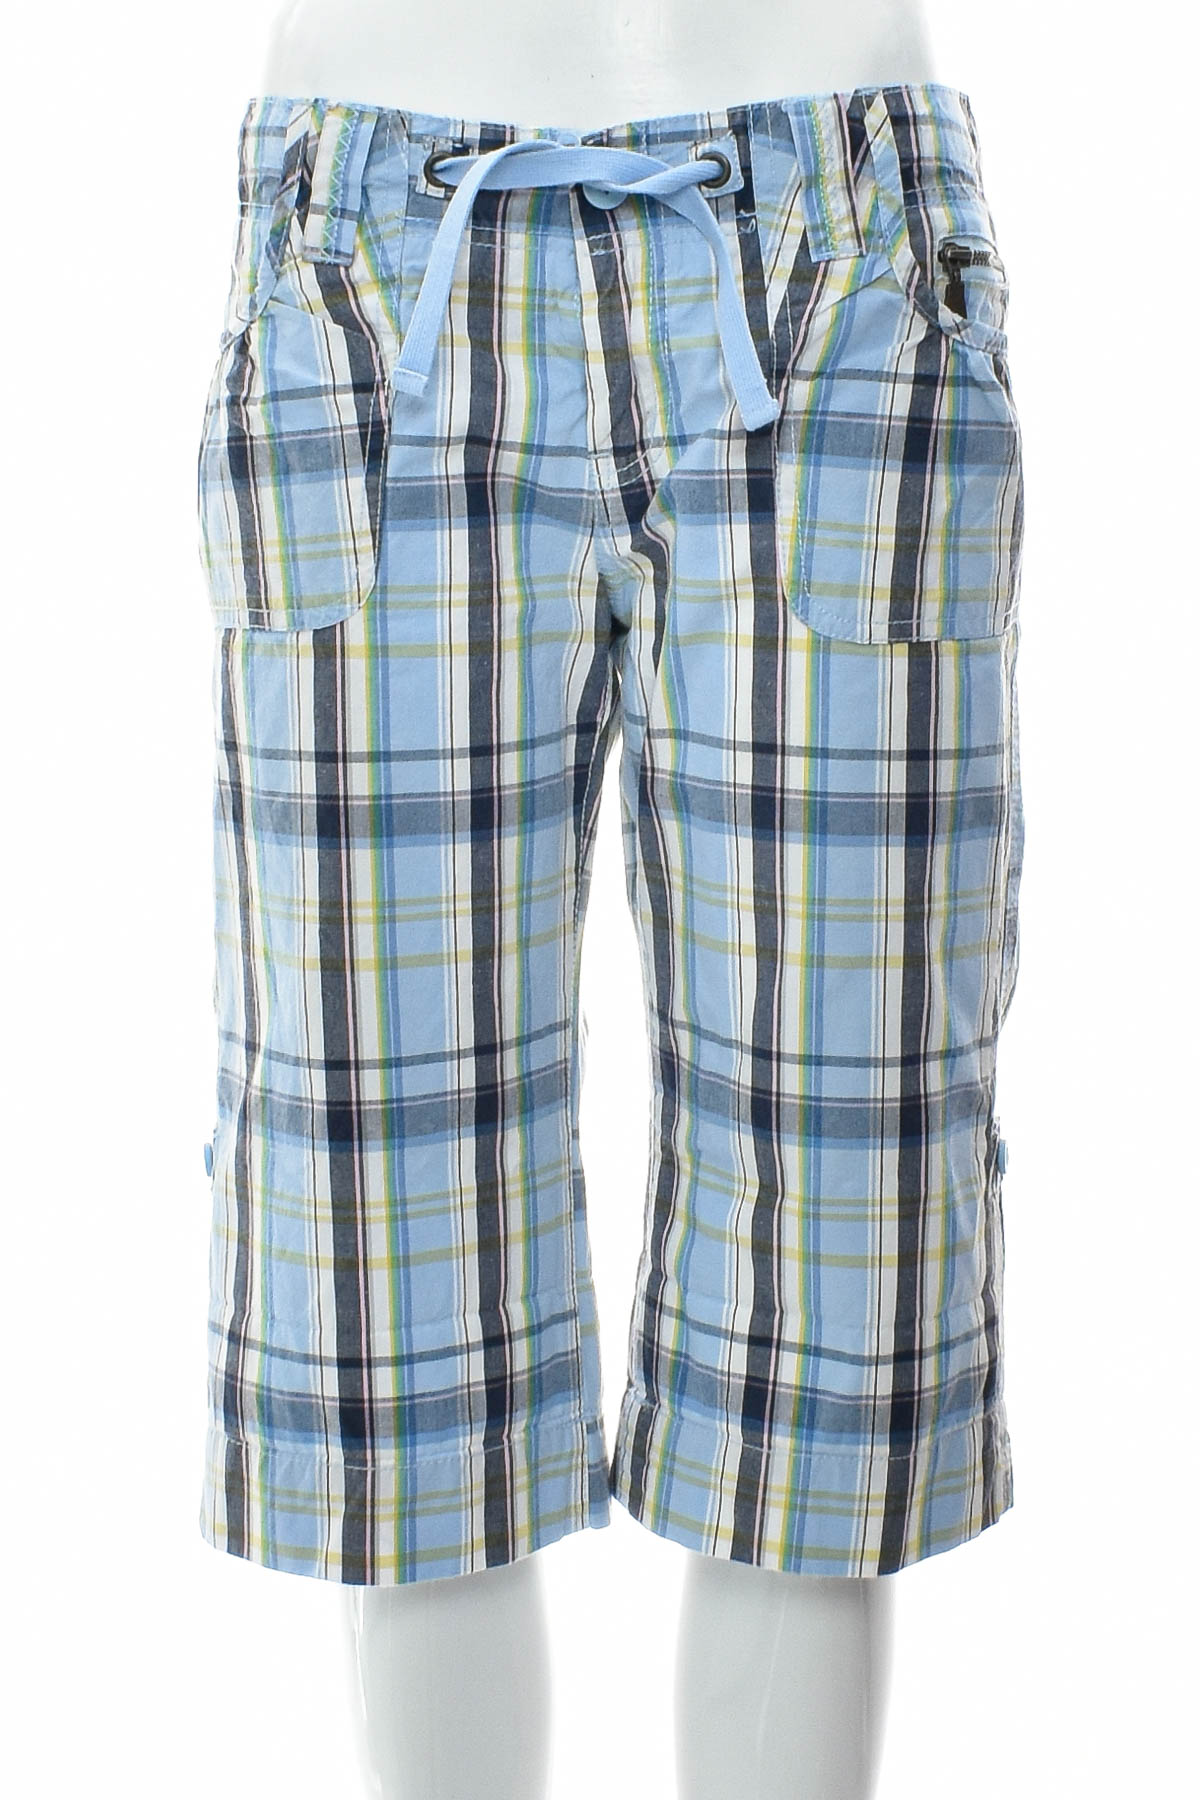 Female shorts - Sutherland - 0